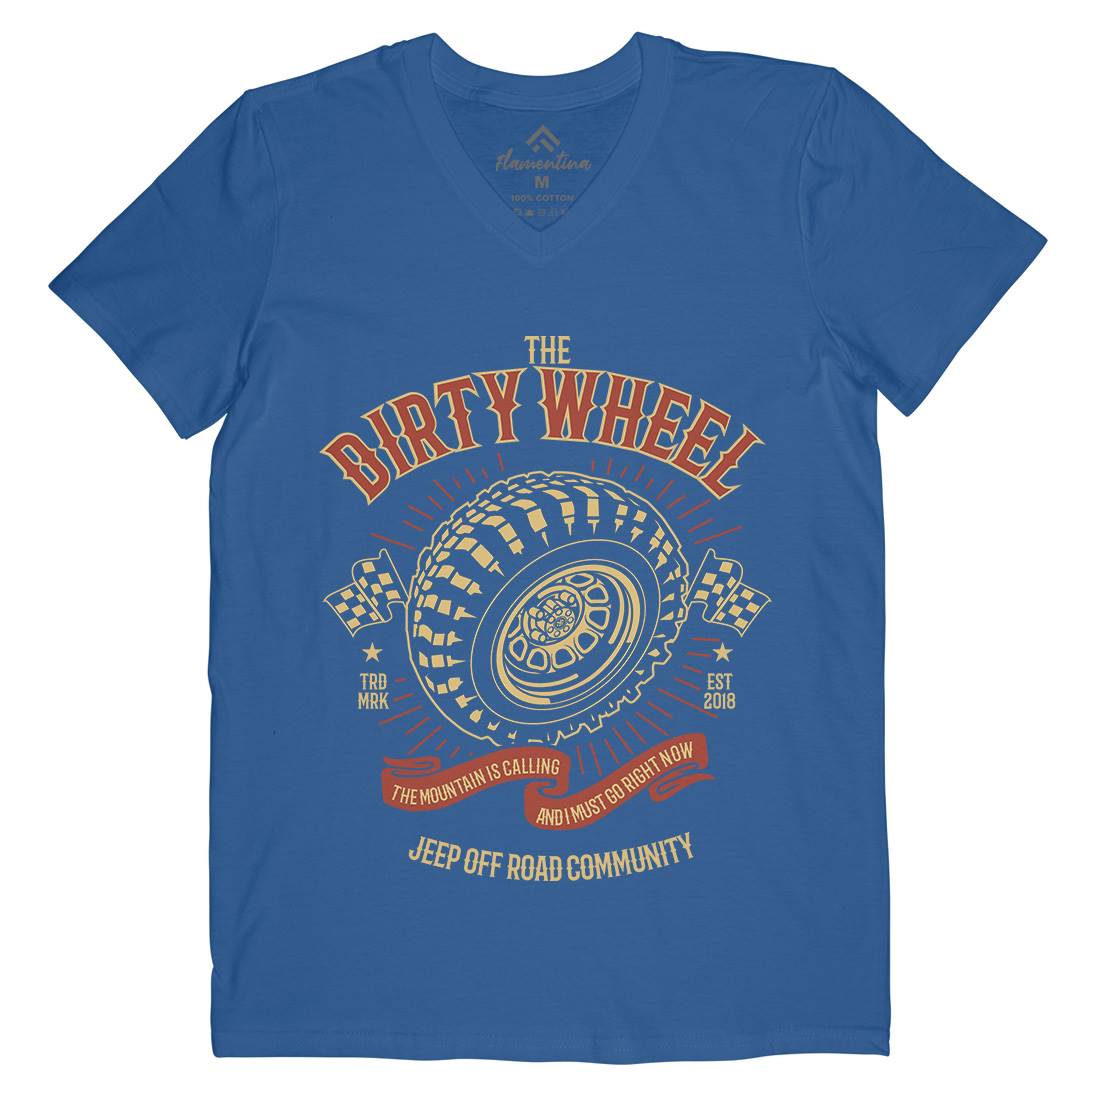 The Dirty Wheel Mens V-Neck T-Shirt Cars B262